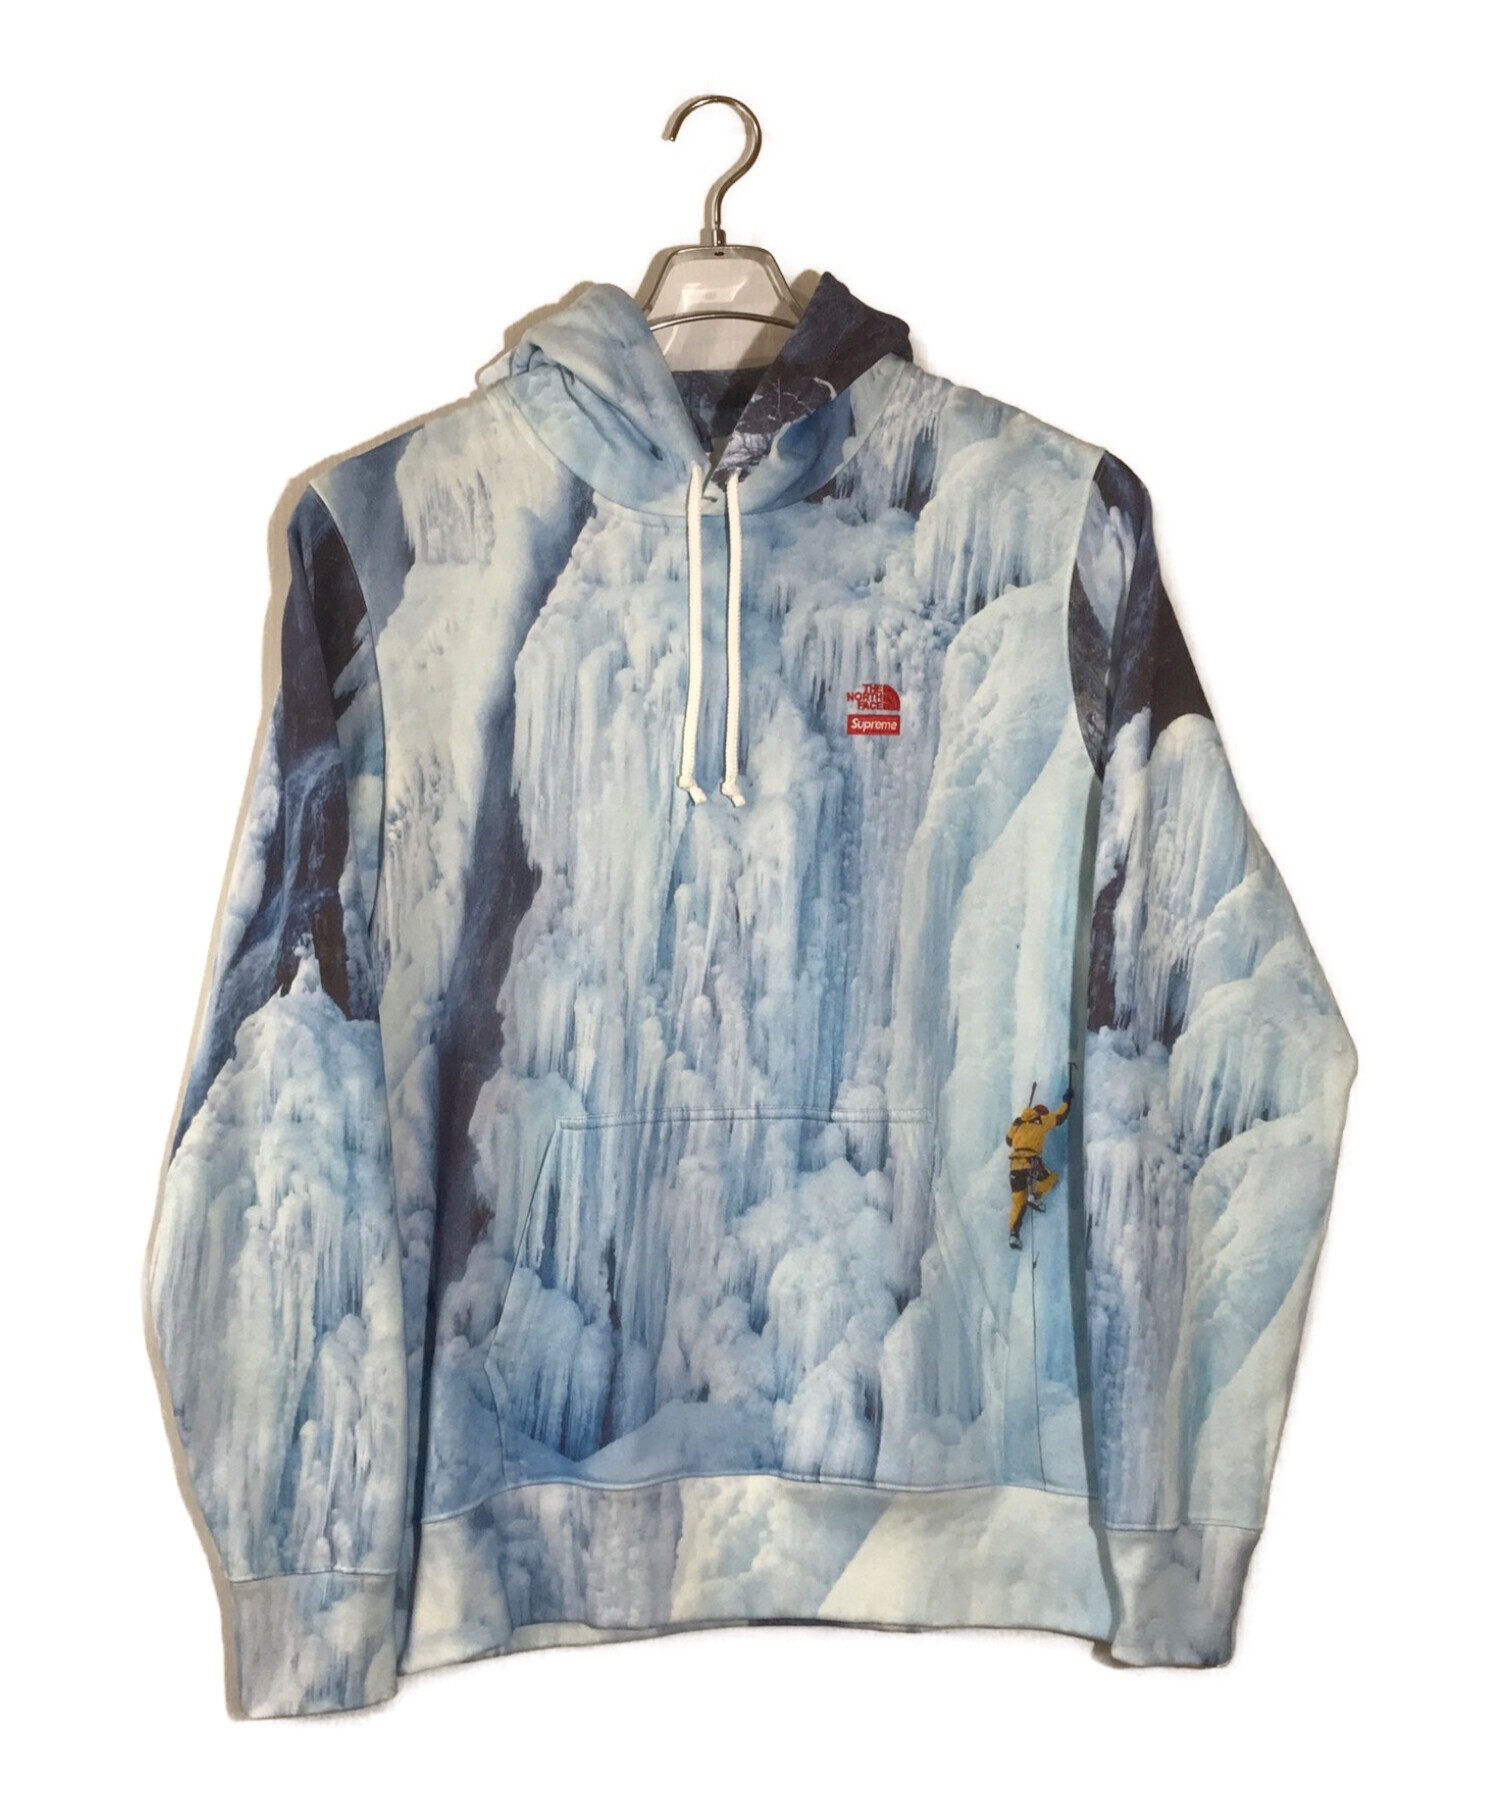 SUPREME×THE NORTH FACE (シュプリーム × ザノースフェイス) Ice Climb Hooded Sweatshirt ブルー  サイズ:M